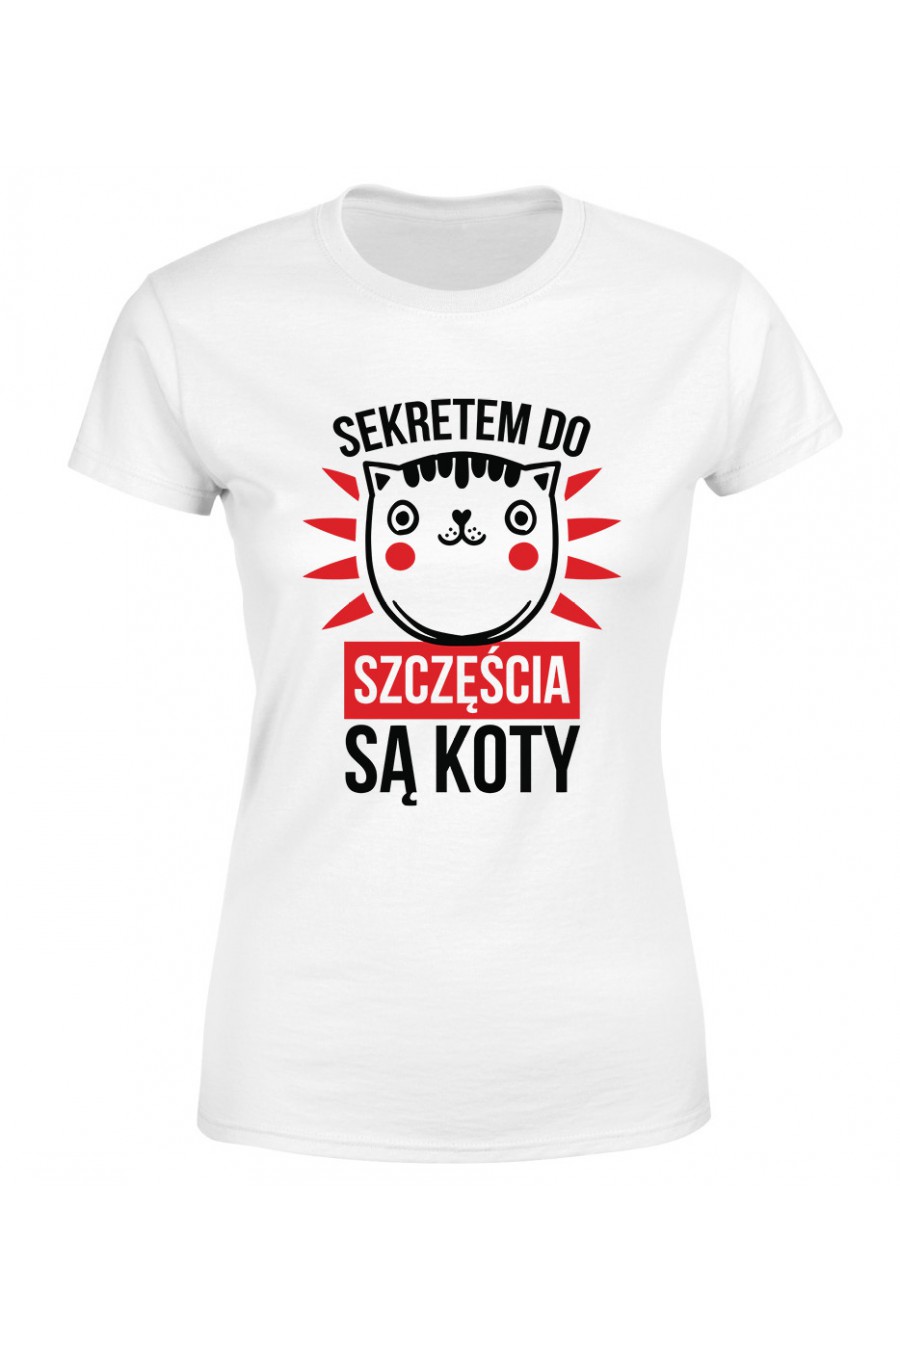 Koszulka Damska Sekretem Do Szczęścia Są Koty